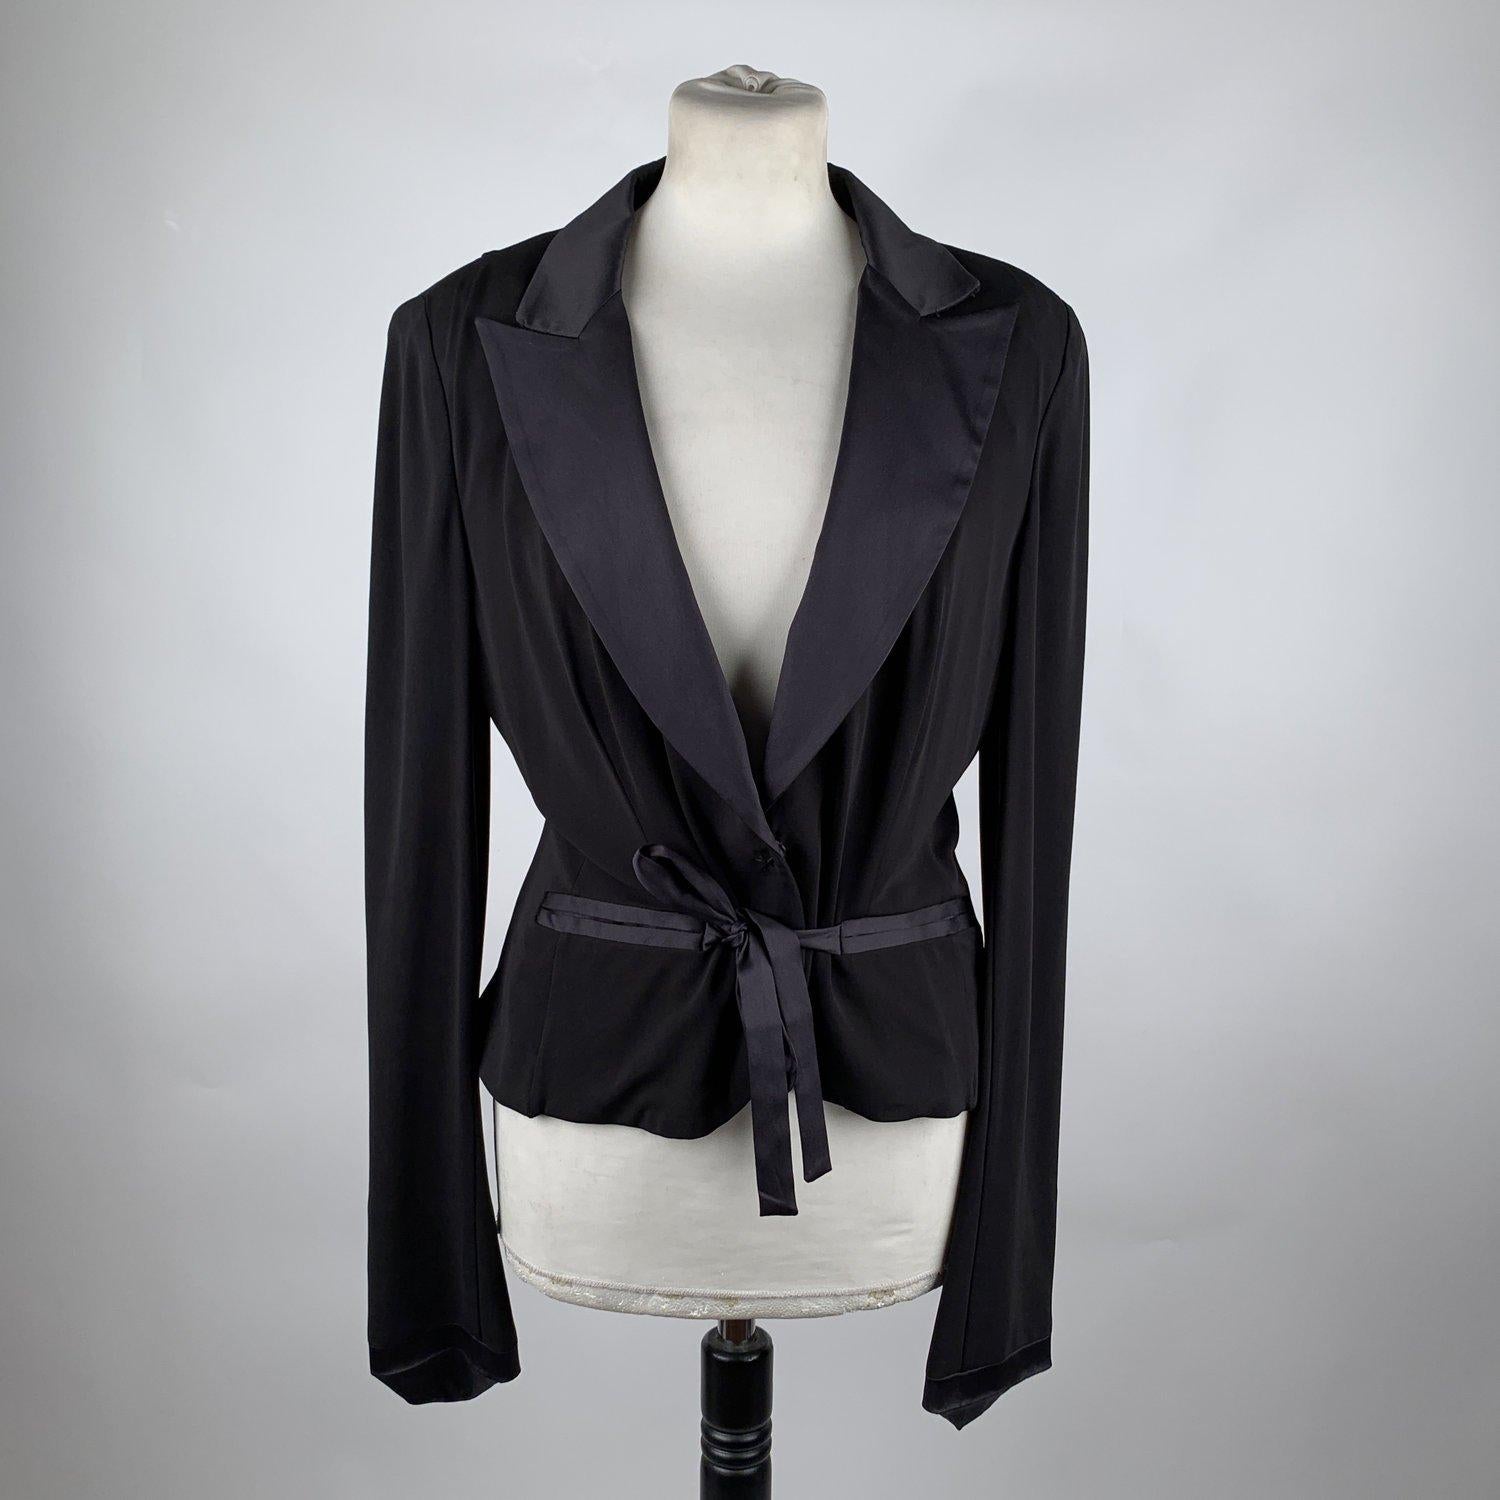 Gianfranco Ferré Black Blazer Jacket with Silk Trim Size 44 4